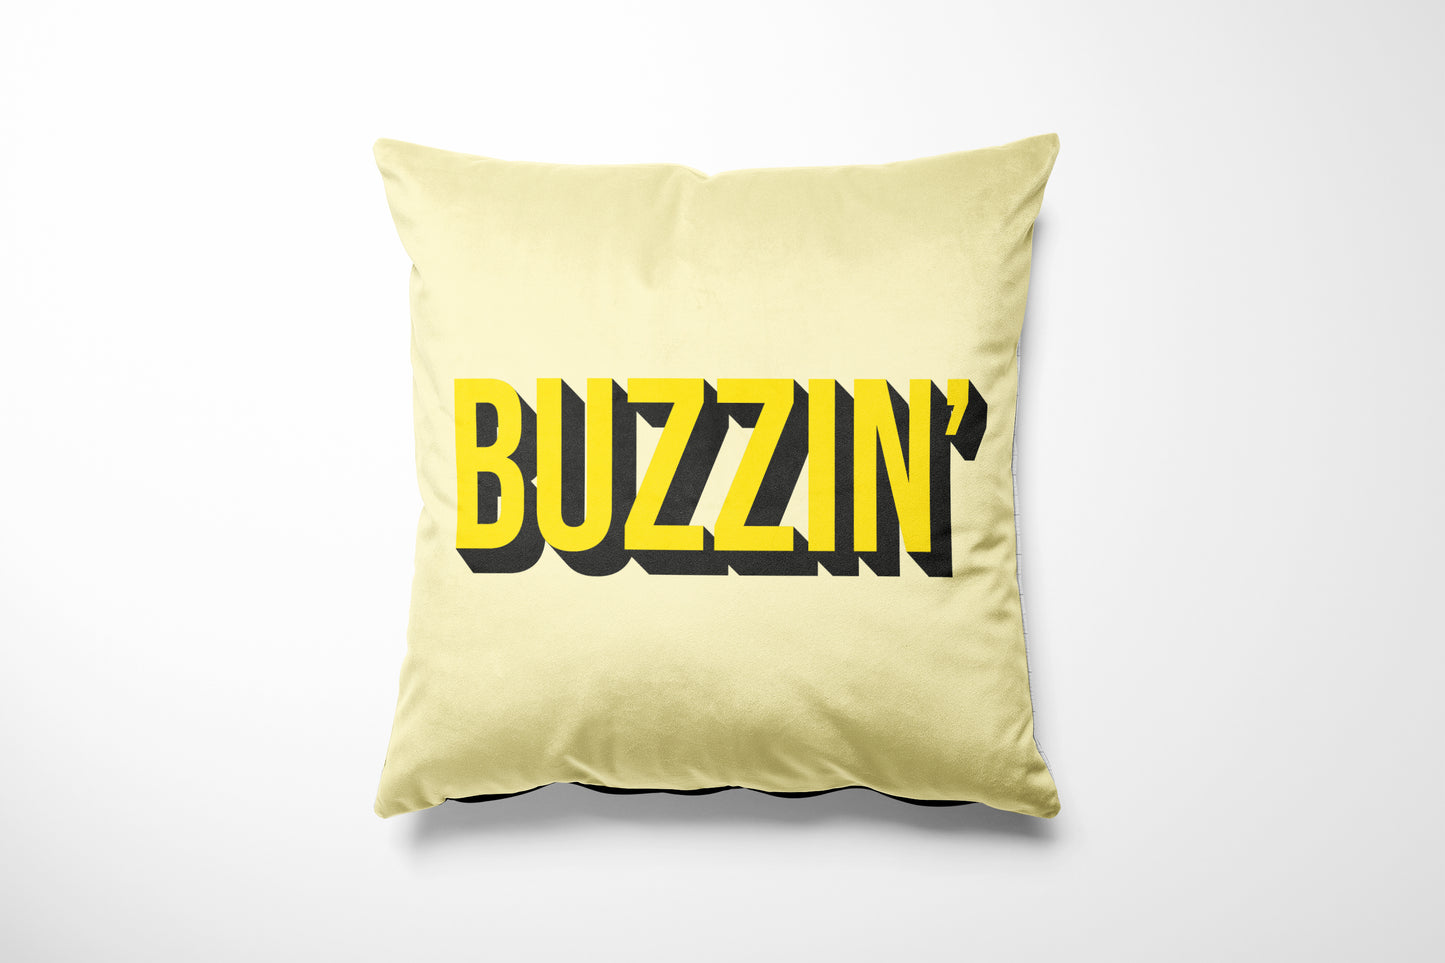 Buzzin' - Manchester Cushion